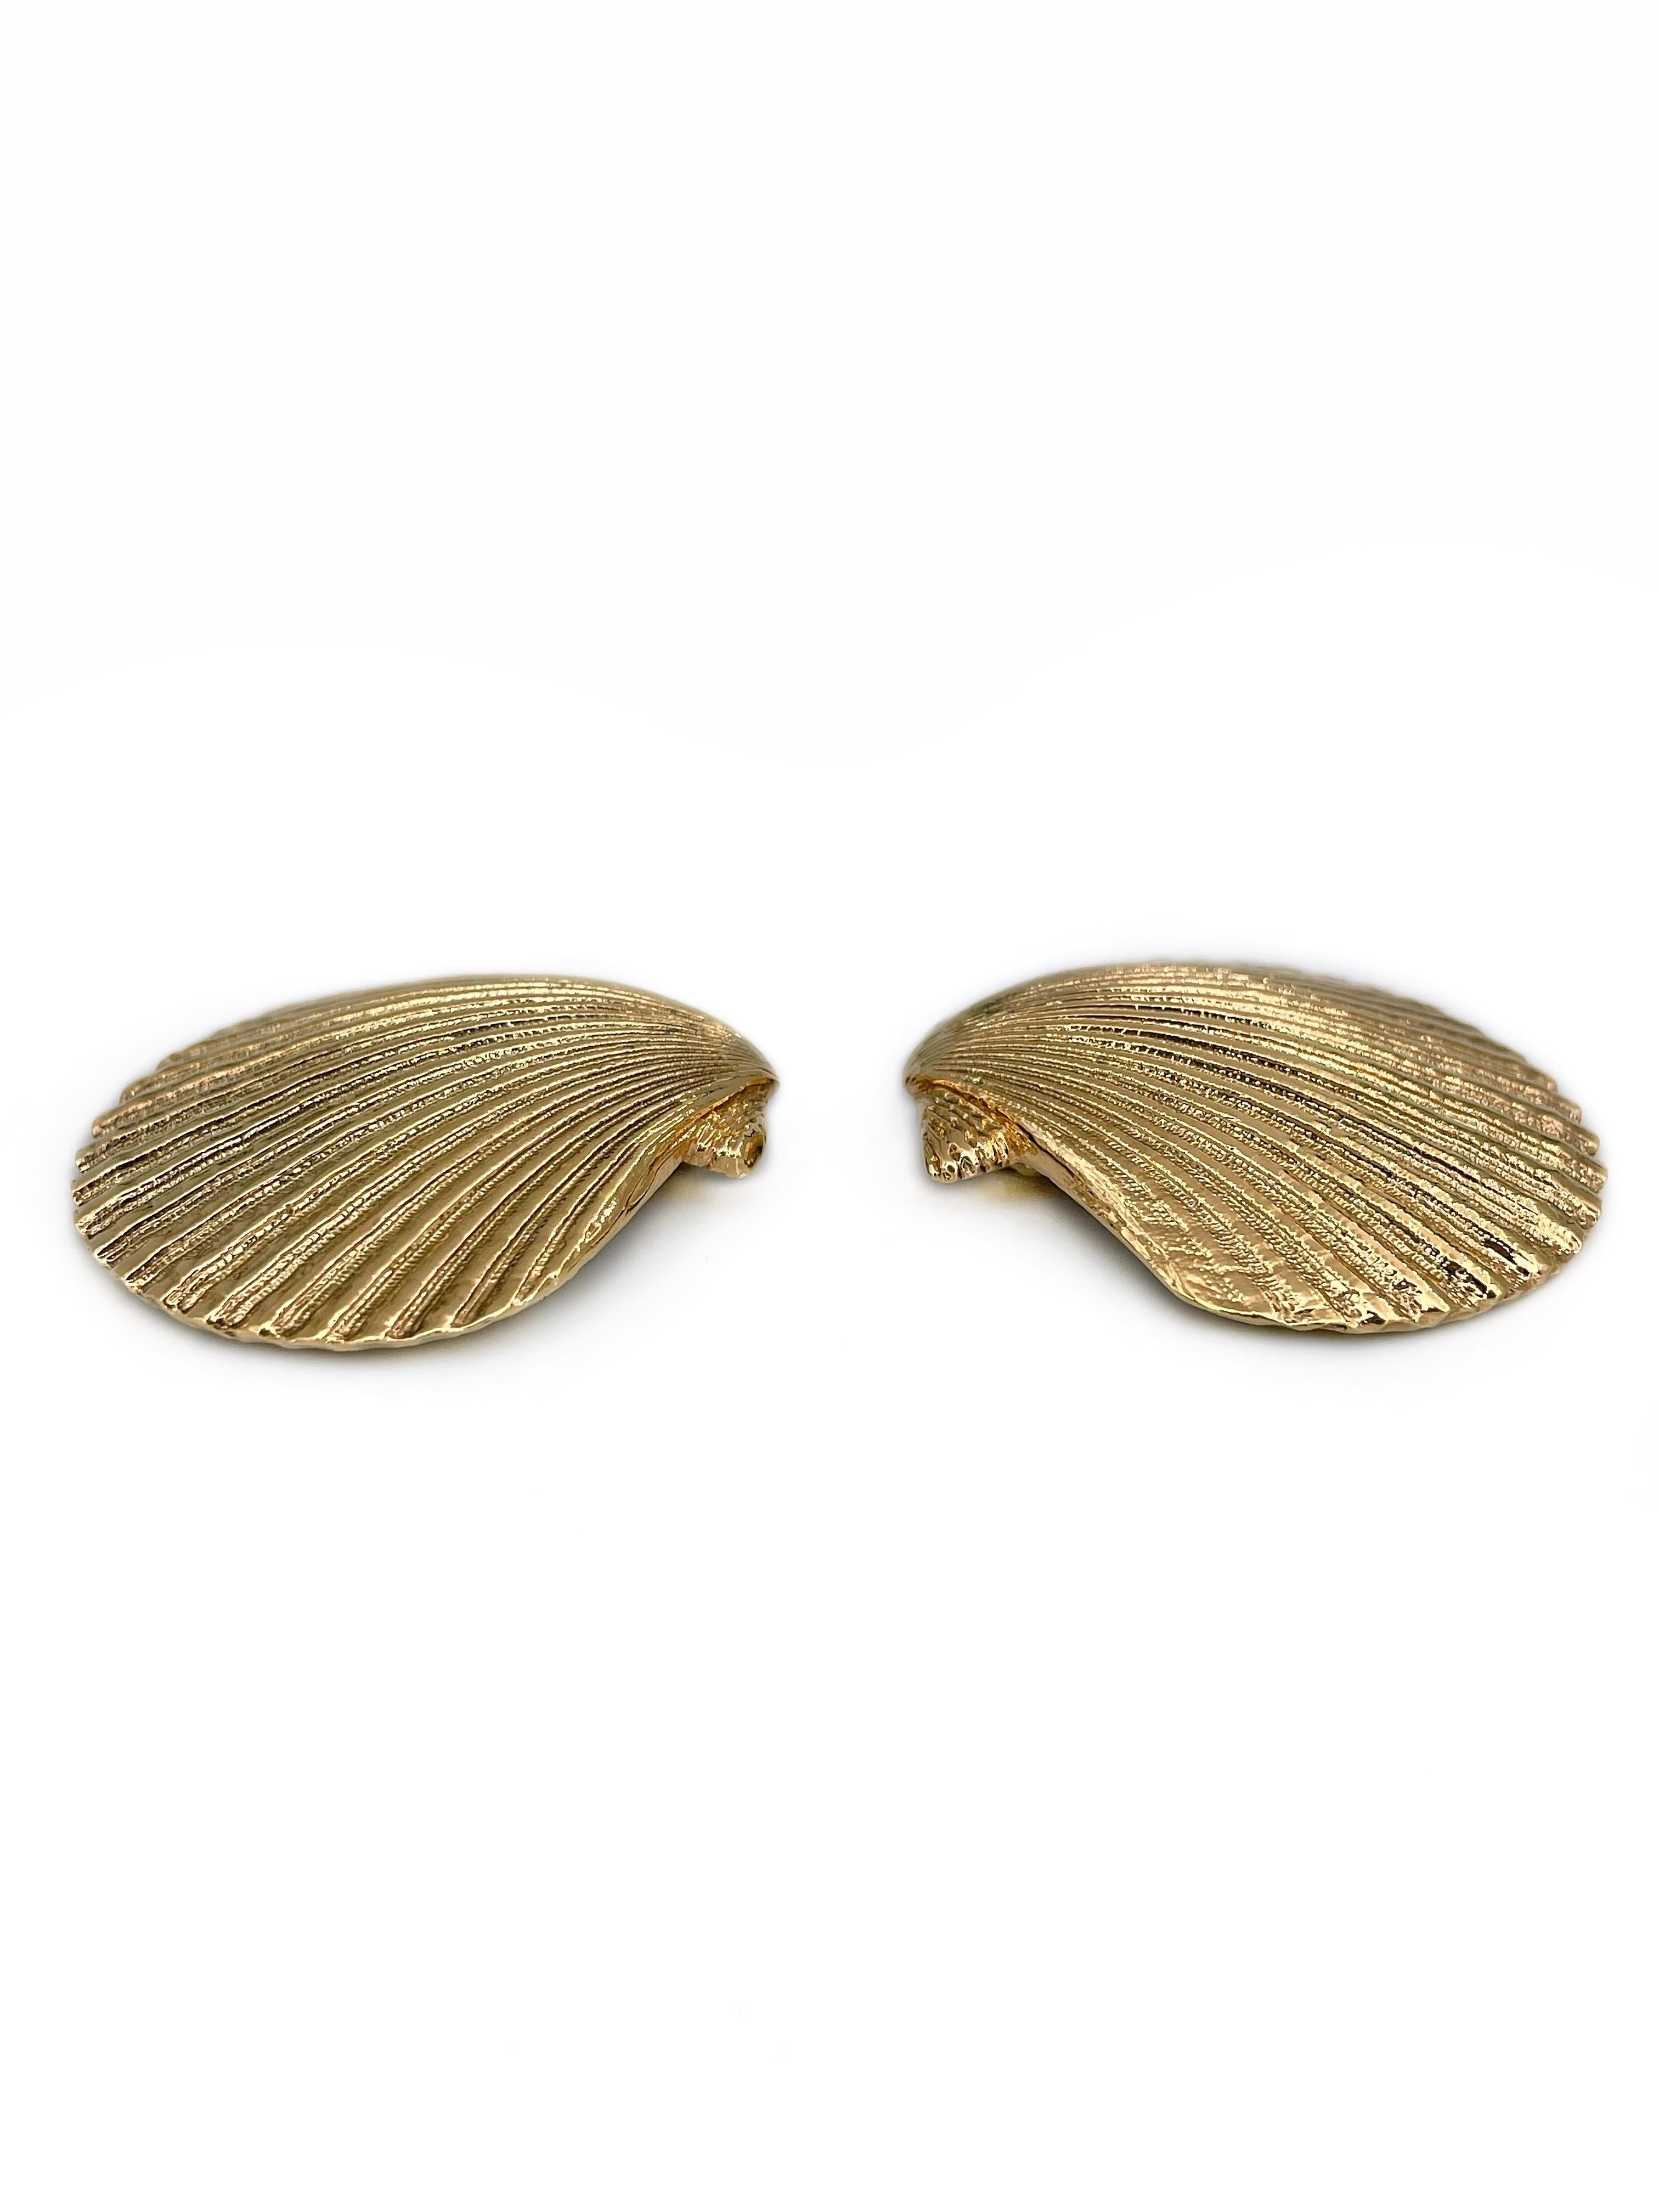 Modern 1980s Vintage Yves Saint Laurent Gold Tone Shell Shape Clip-On Earrings